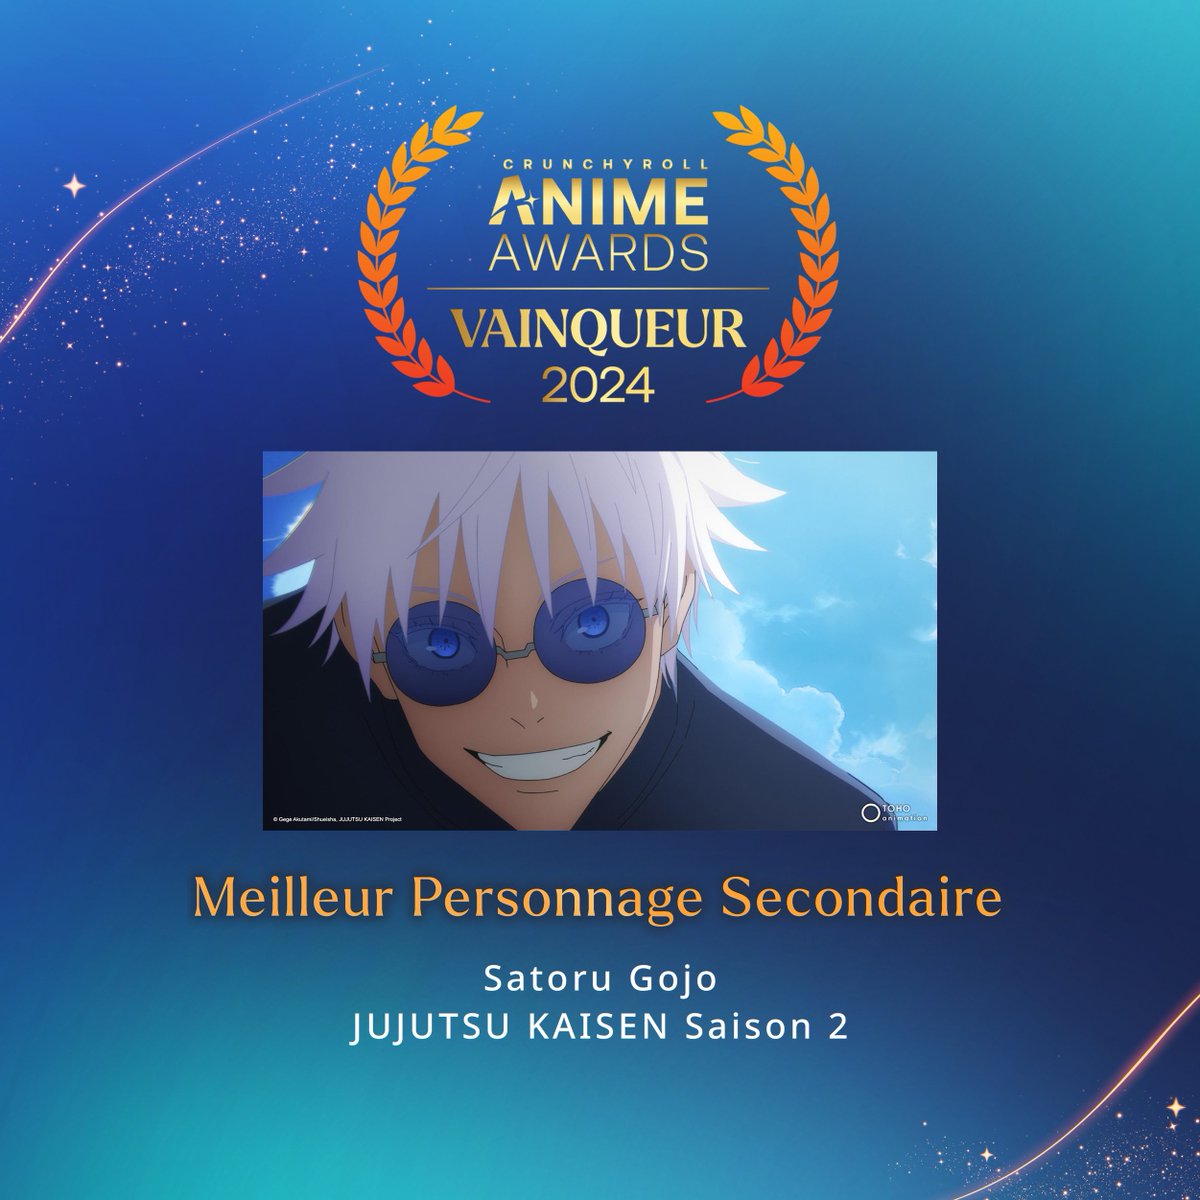 @SpyFamilyAnime @Chainsaw_FR @Jujutsu_anime Tout simplement le GOAT. Gojo repart avec l'Anime Awards du Meilleur Personnage Secondaire !